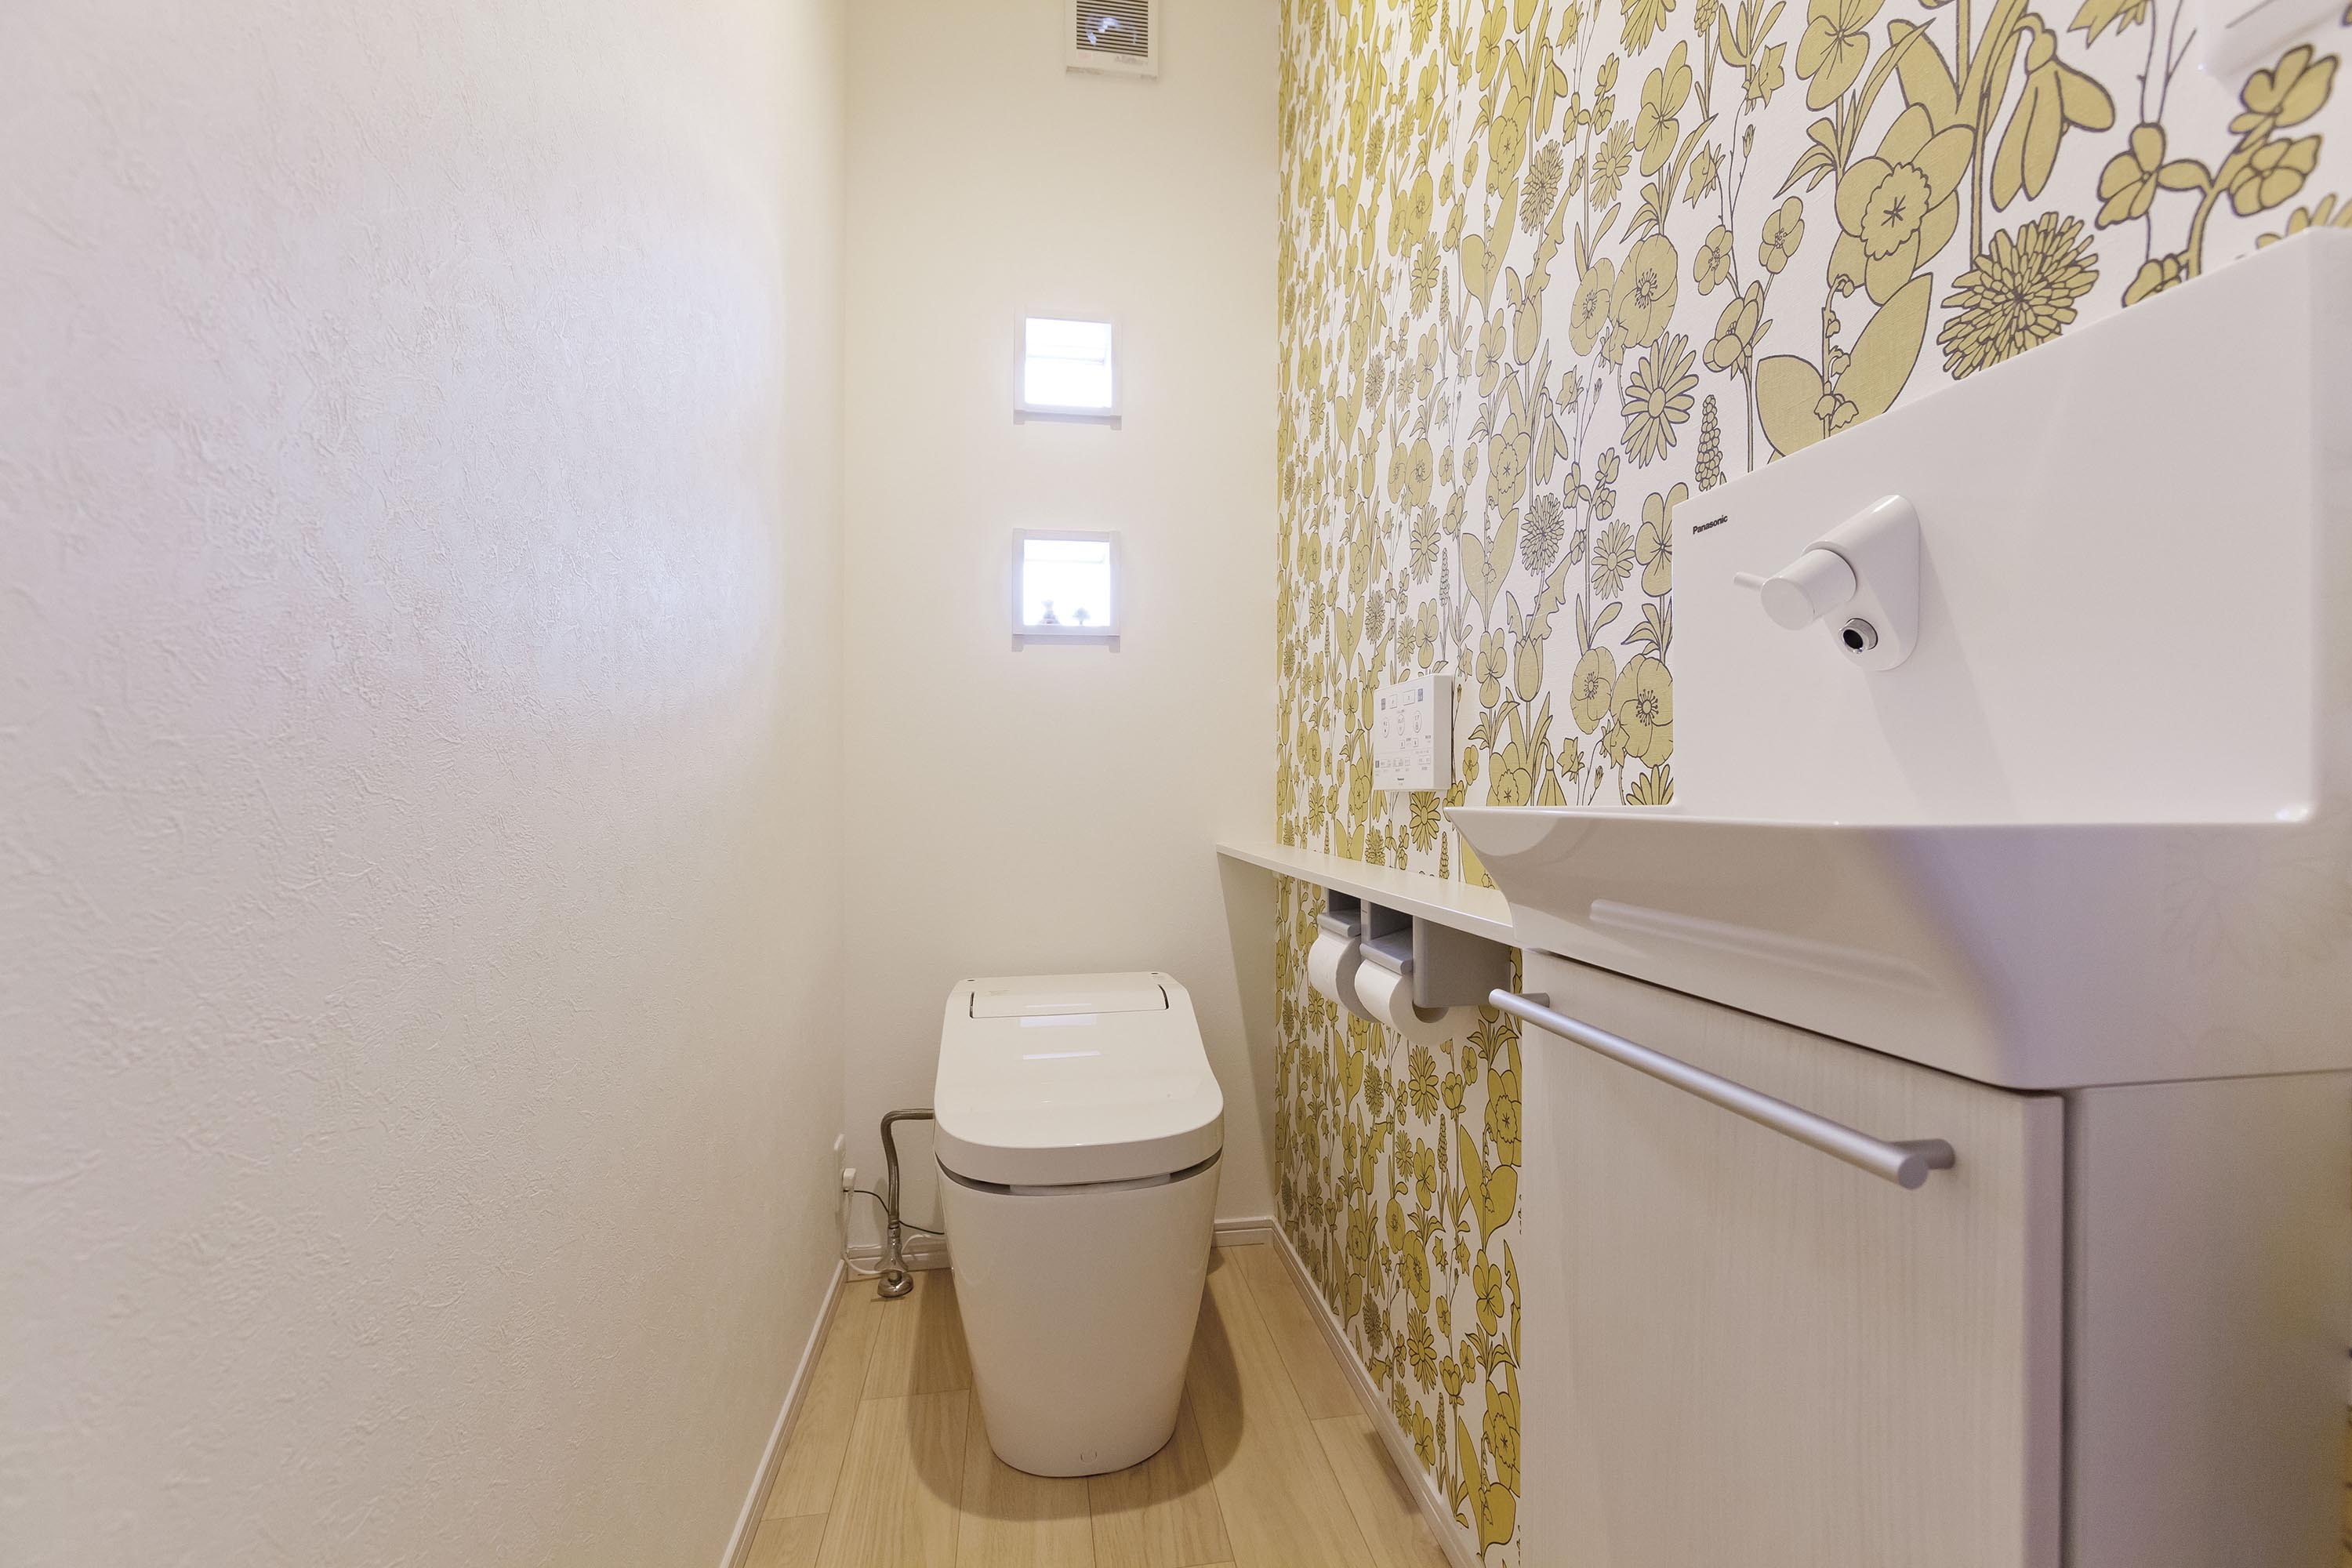 トイレや寝室は遊び心のある壁紙を選んだ。「プライベートな空間だから冒険できました」。落ち着いた色で一面だけにすることでうまく馴染んでいる